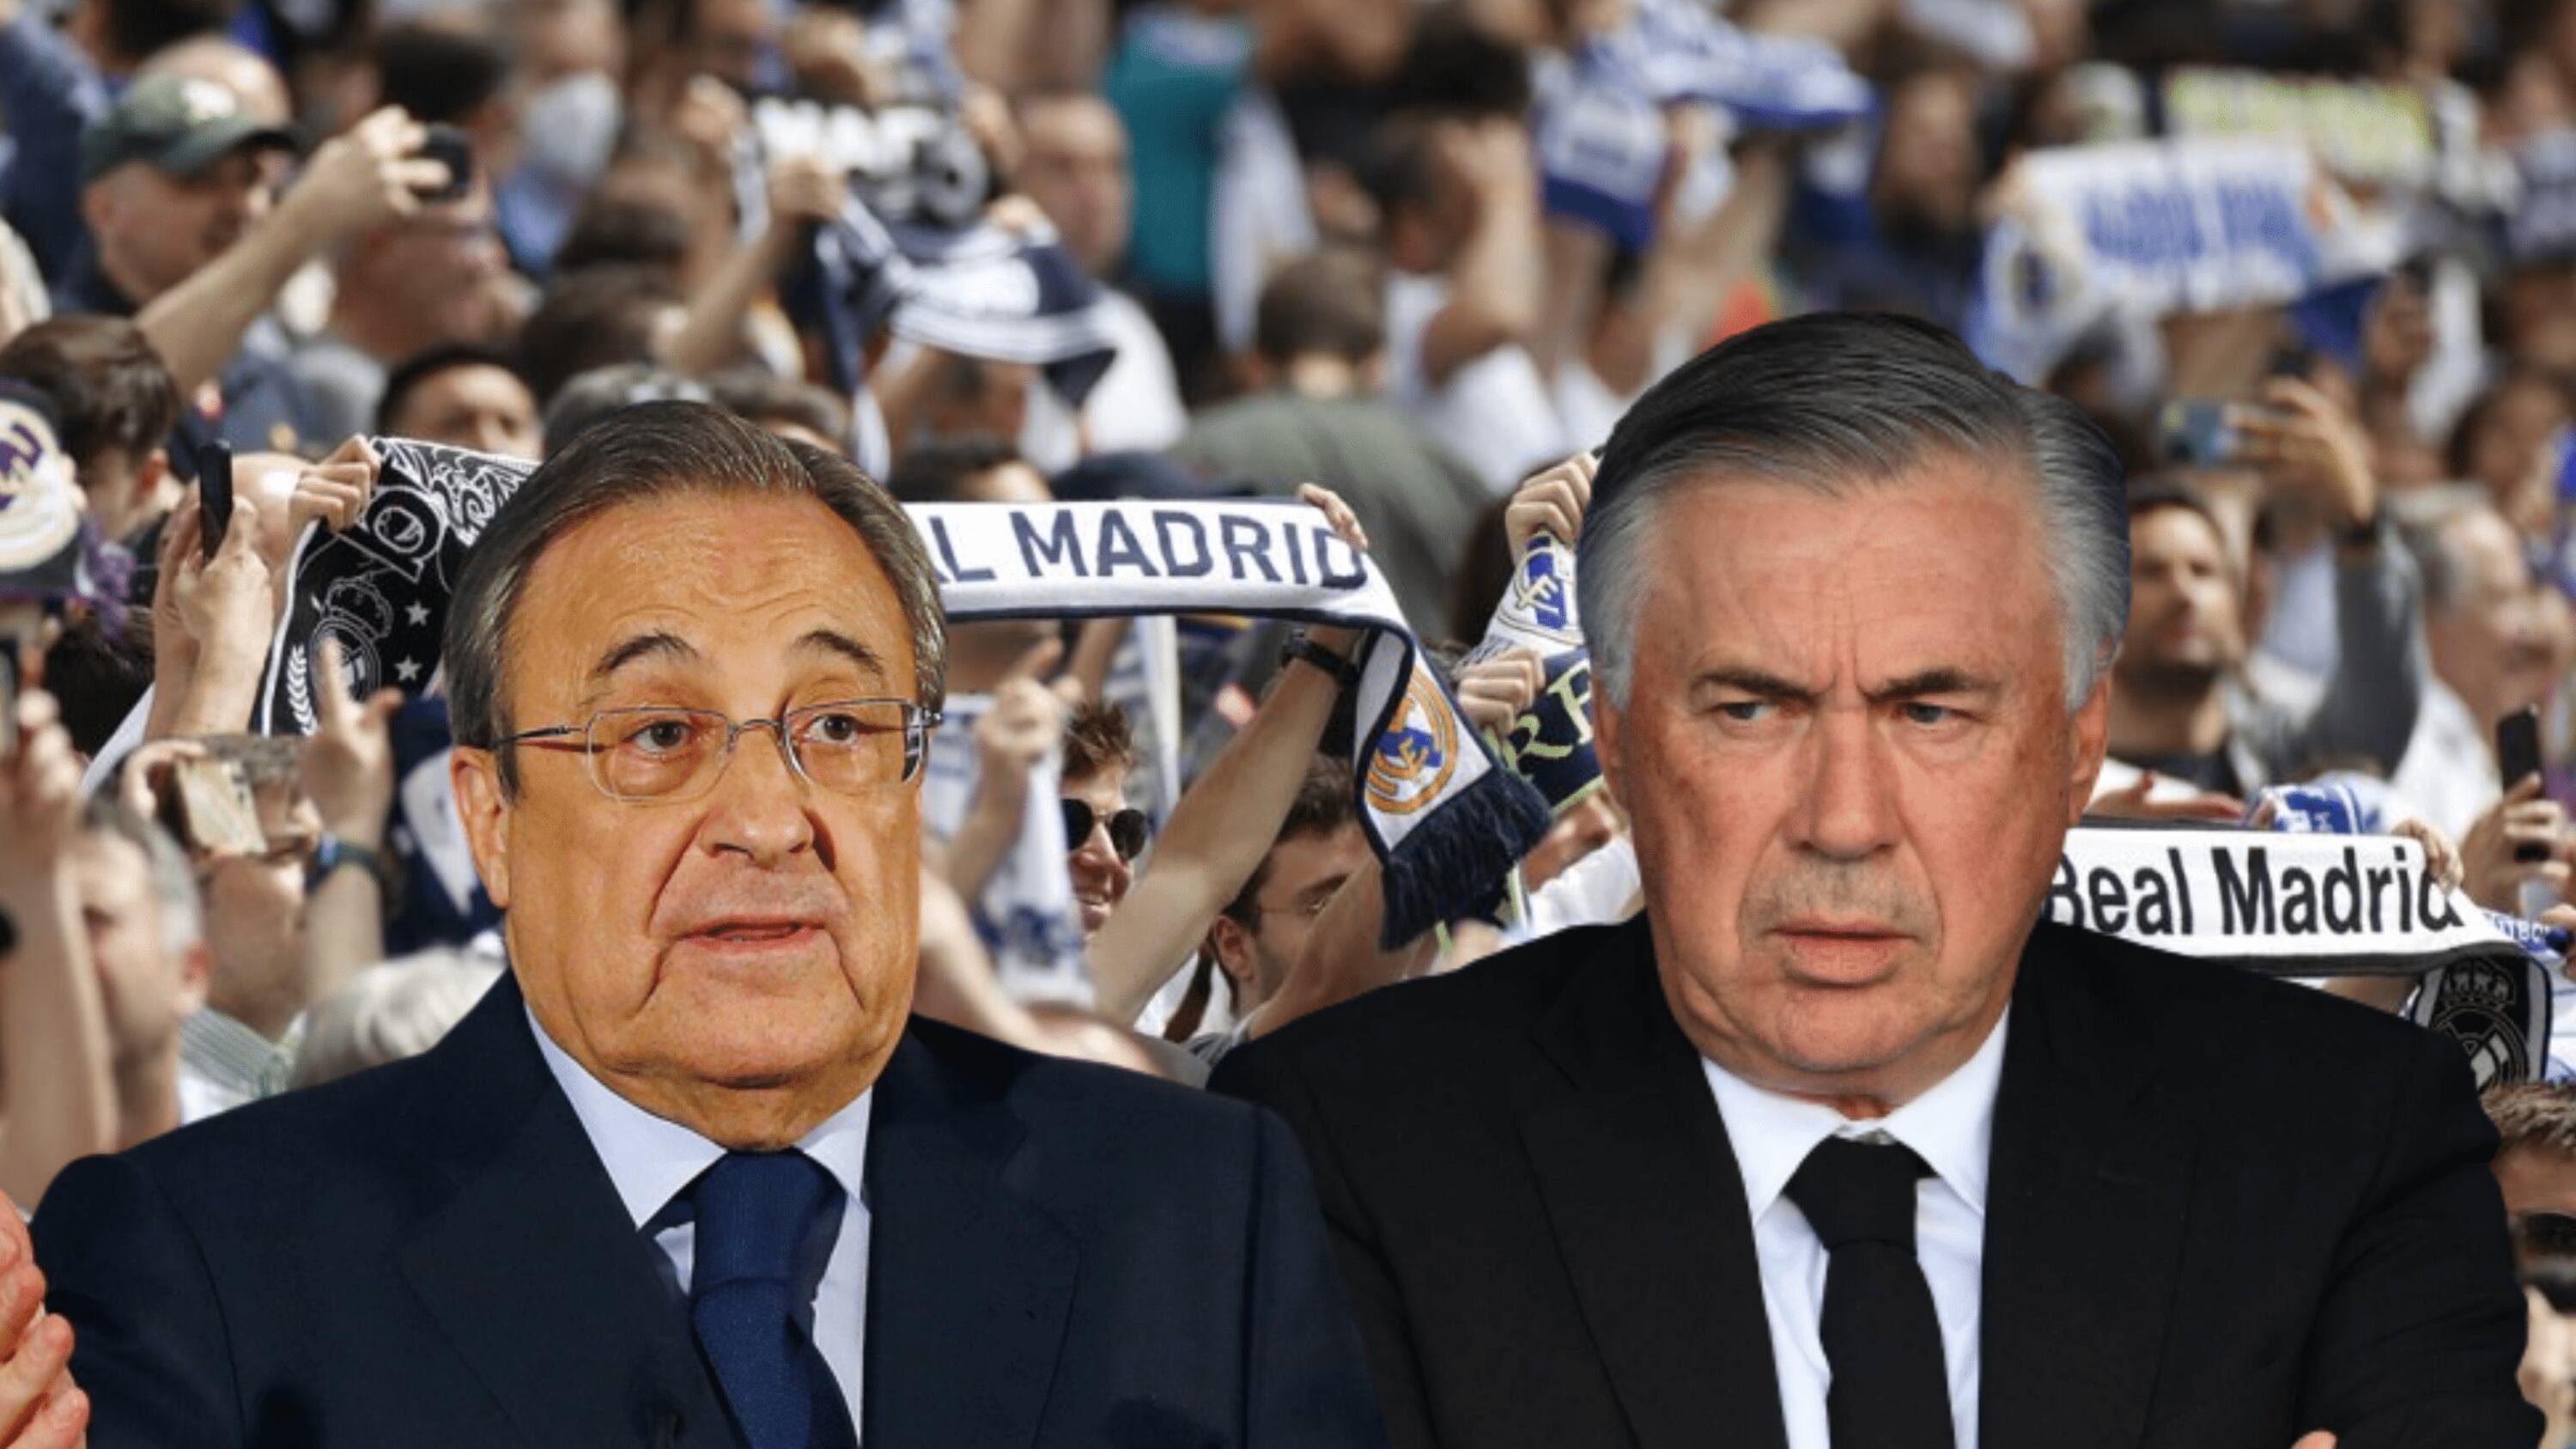 El motivo de porqué los fanáticos del Real Madrid están muy molestos con el club